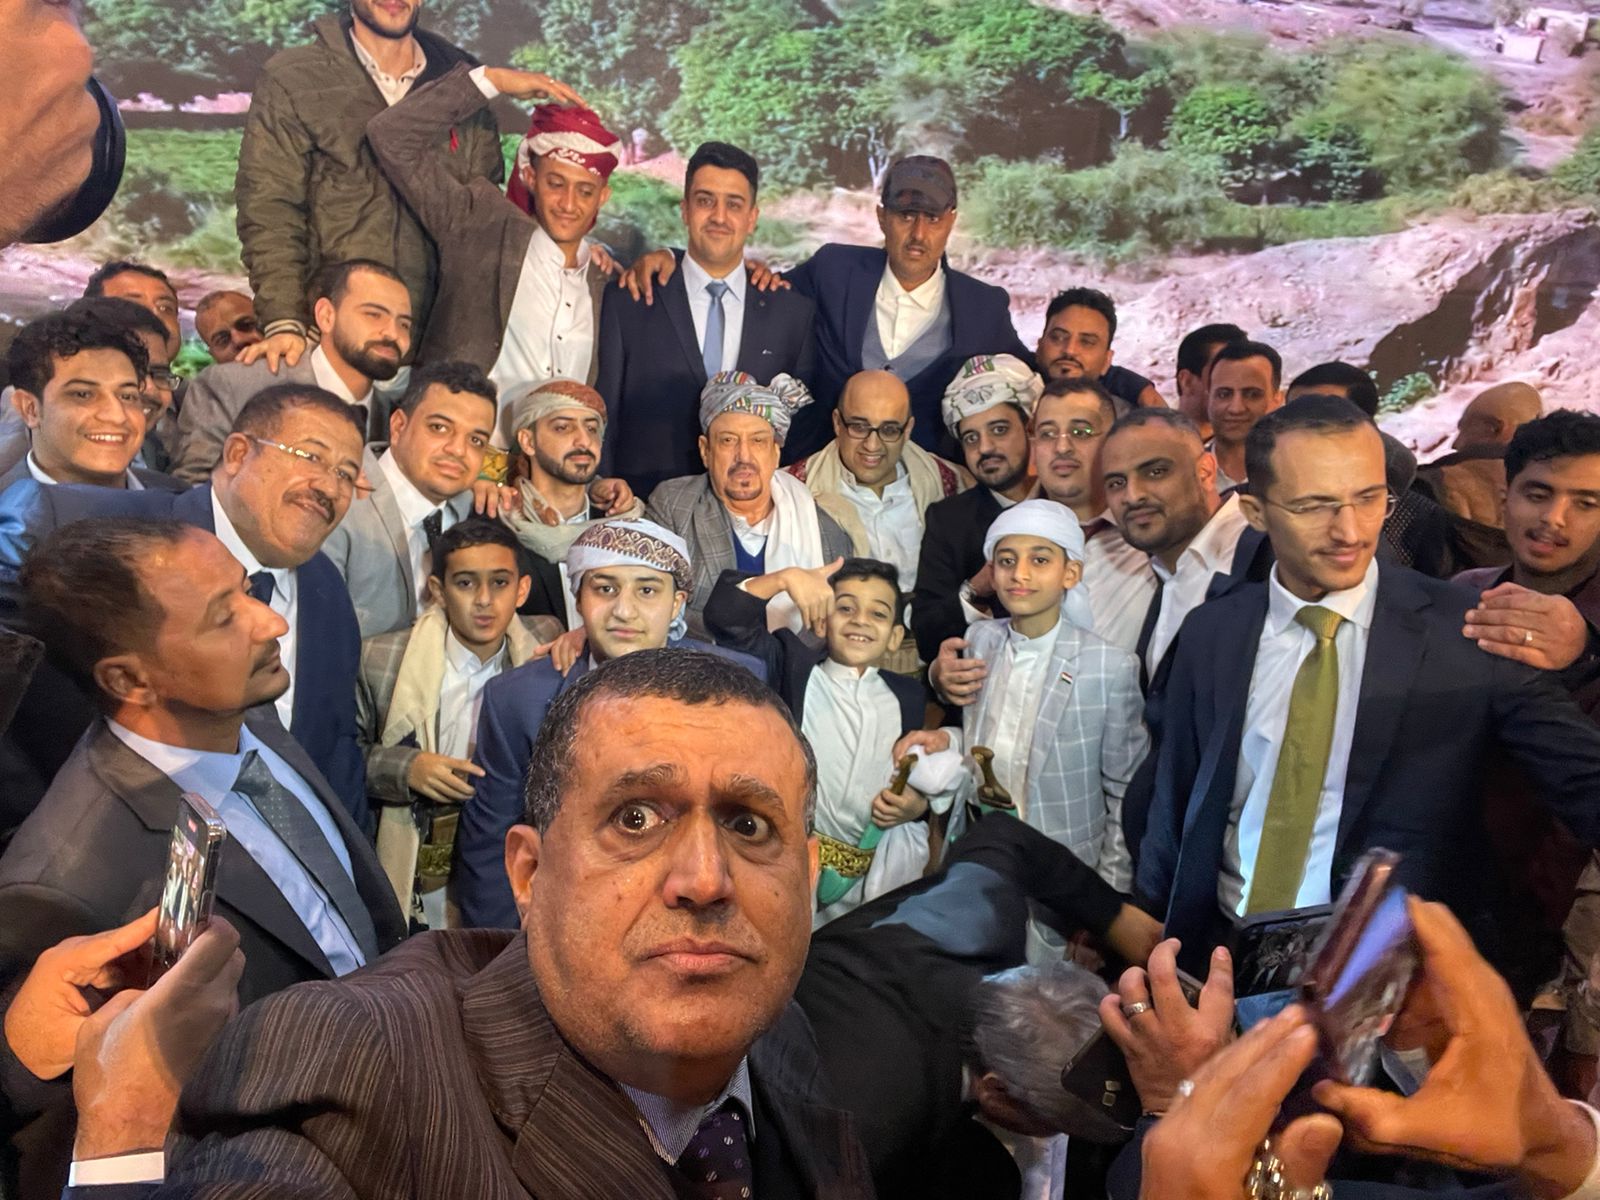 سلطان البركاني يحتفل بزفاف نجليه بحضور كبار الشخصيات اليمنية و المصرية